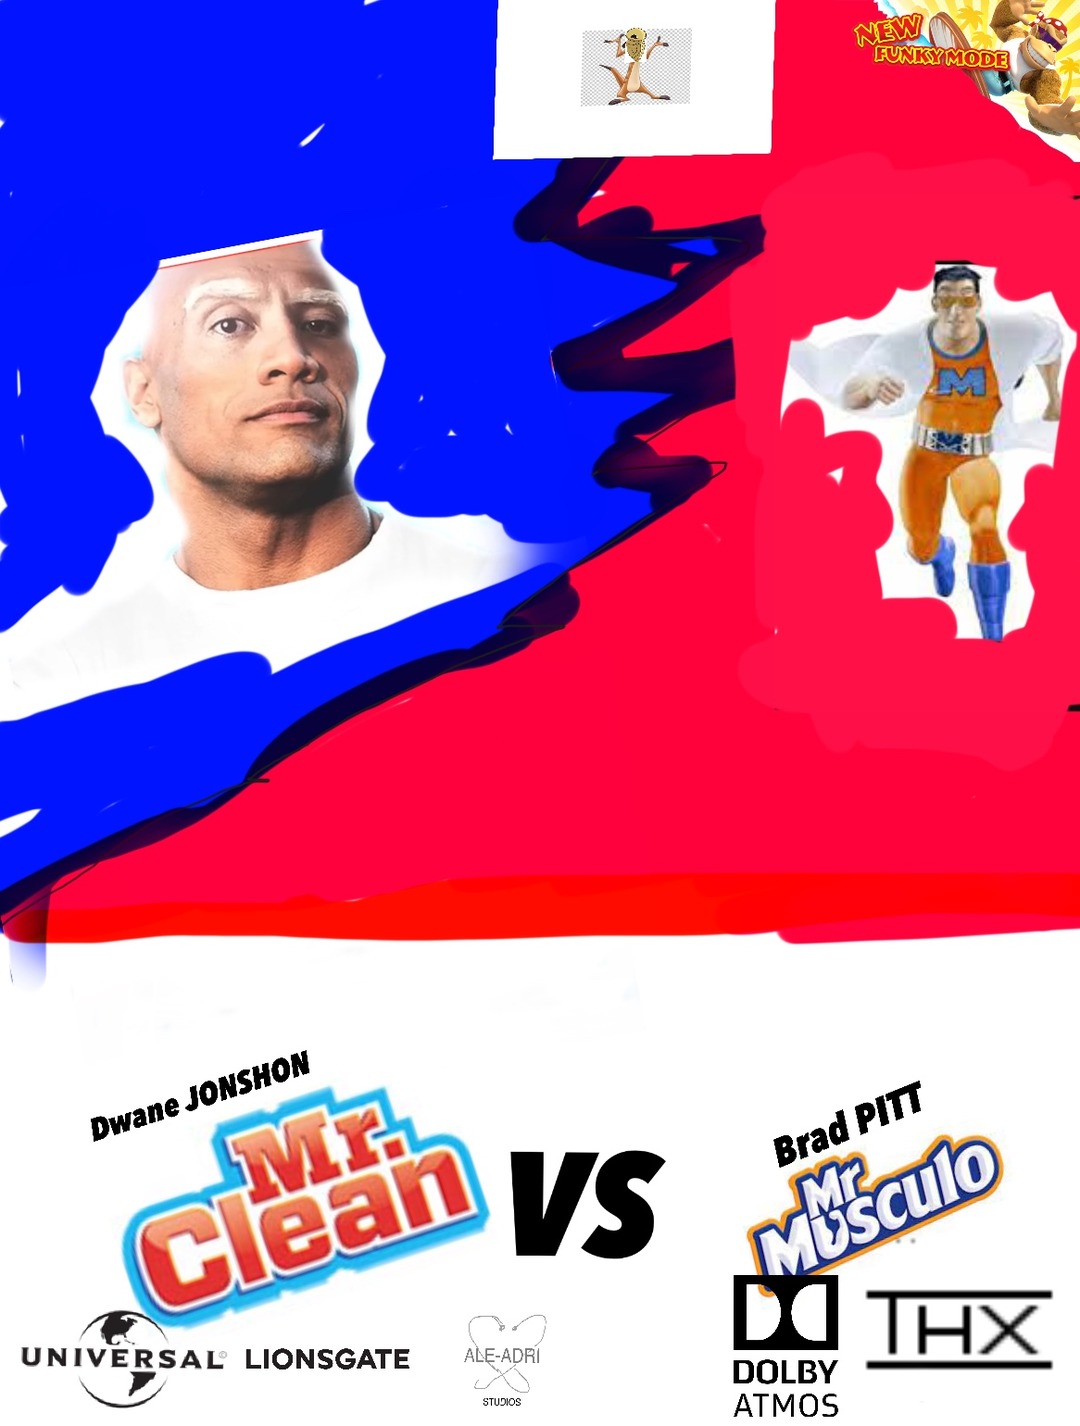 Mr.Clean vs Mr Musculo - meme